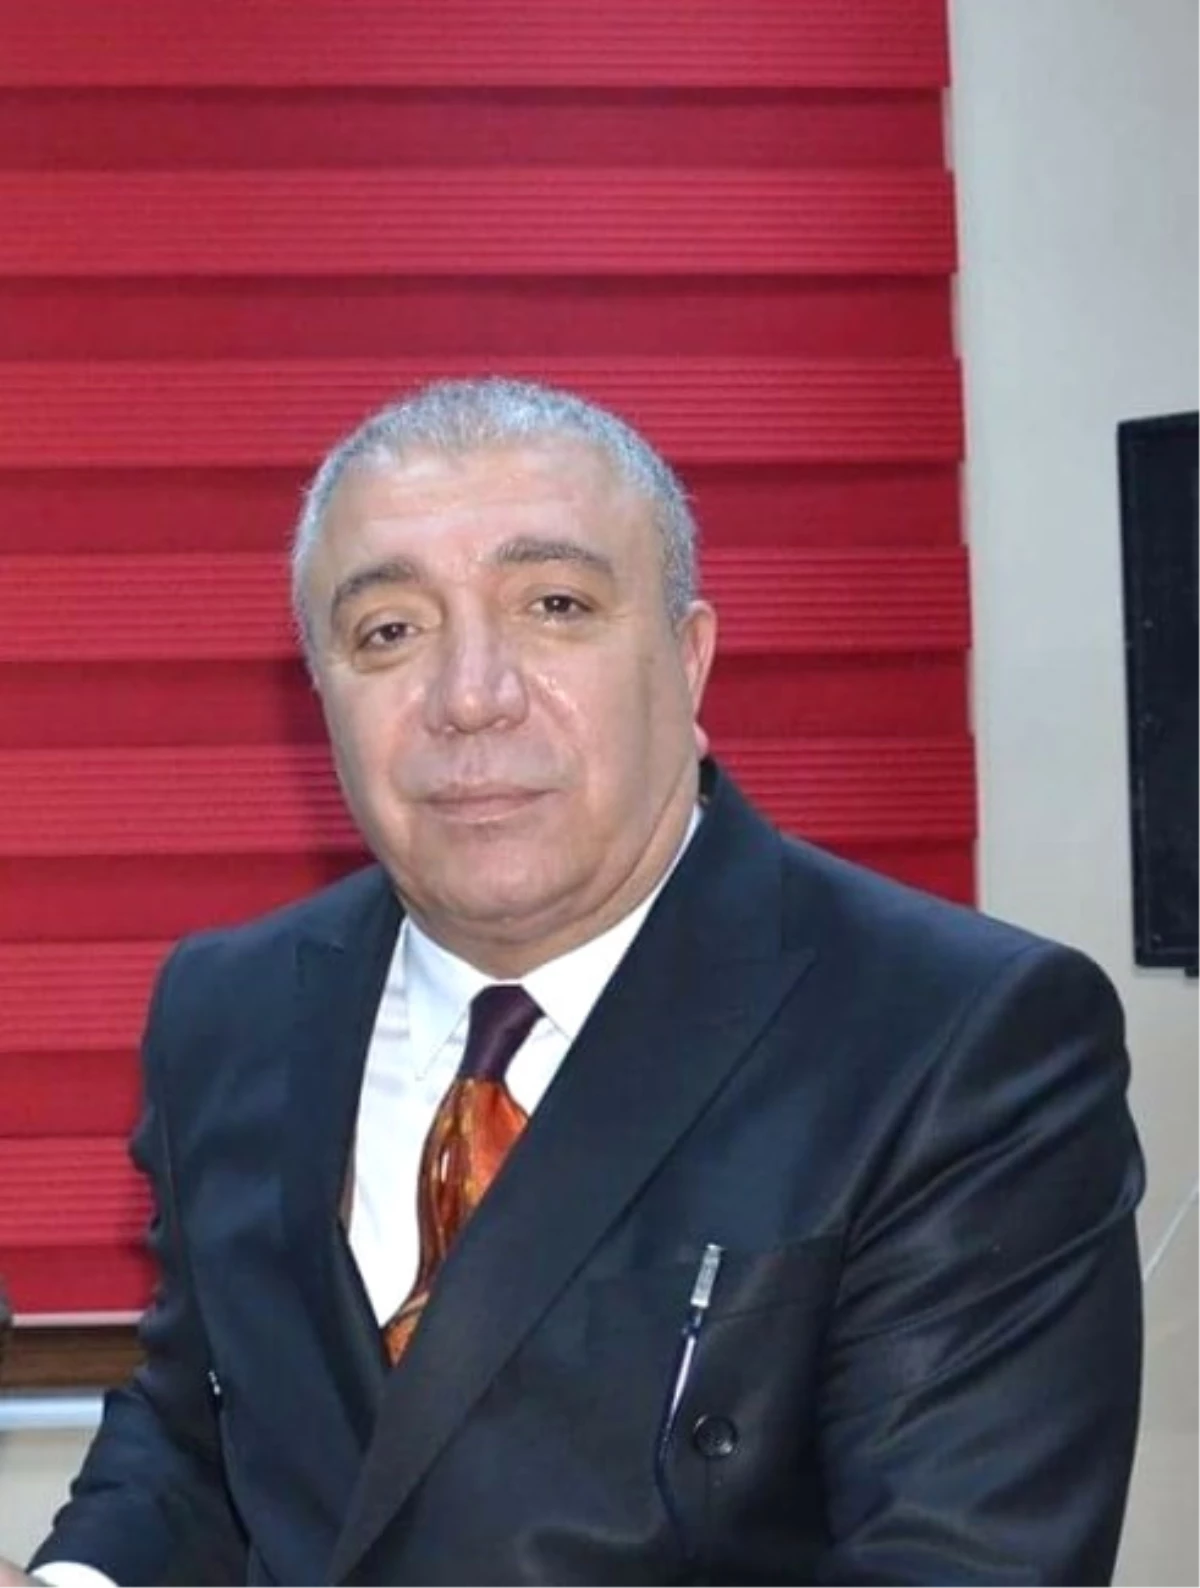 Çat Belediye Başkanı Arif Hikmet Kılıç: "Gazeteciler, Toplumun Gözü, Kulağı, Sesi ve Demokrasinin...